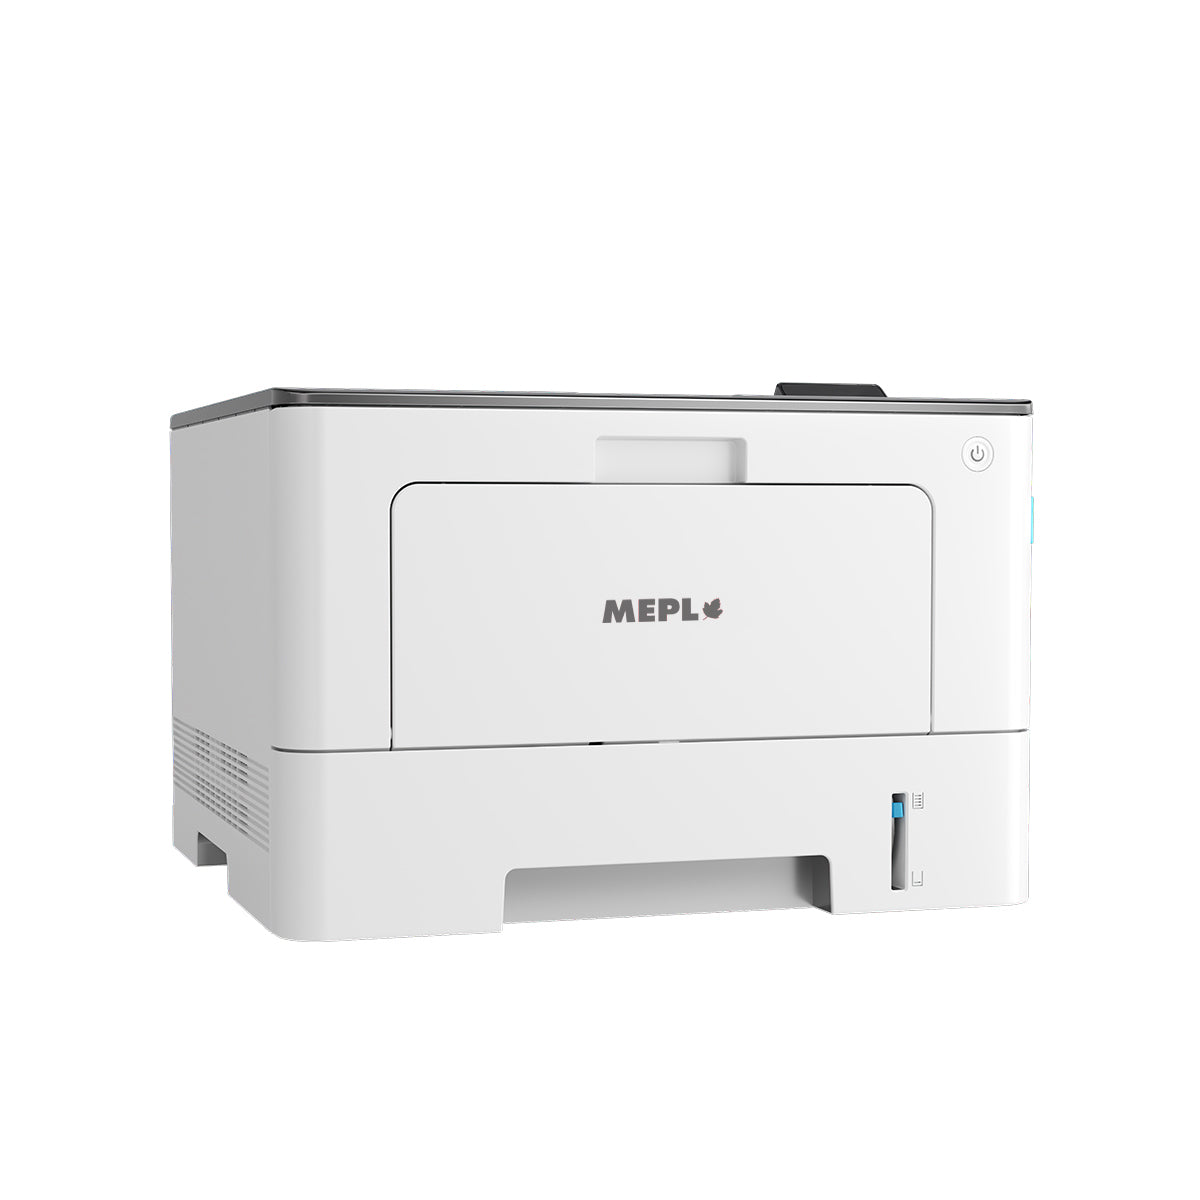 MP3303DW Mono Laser Single Function Printer